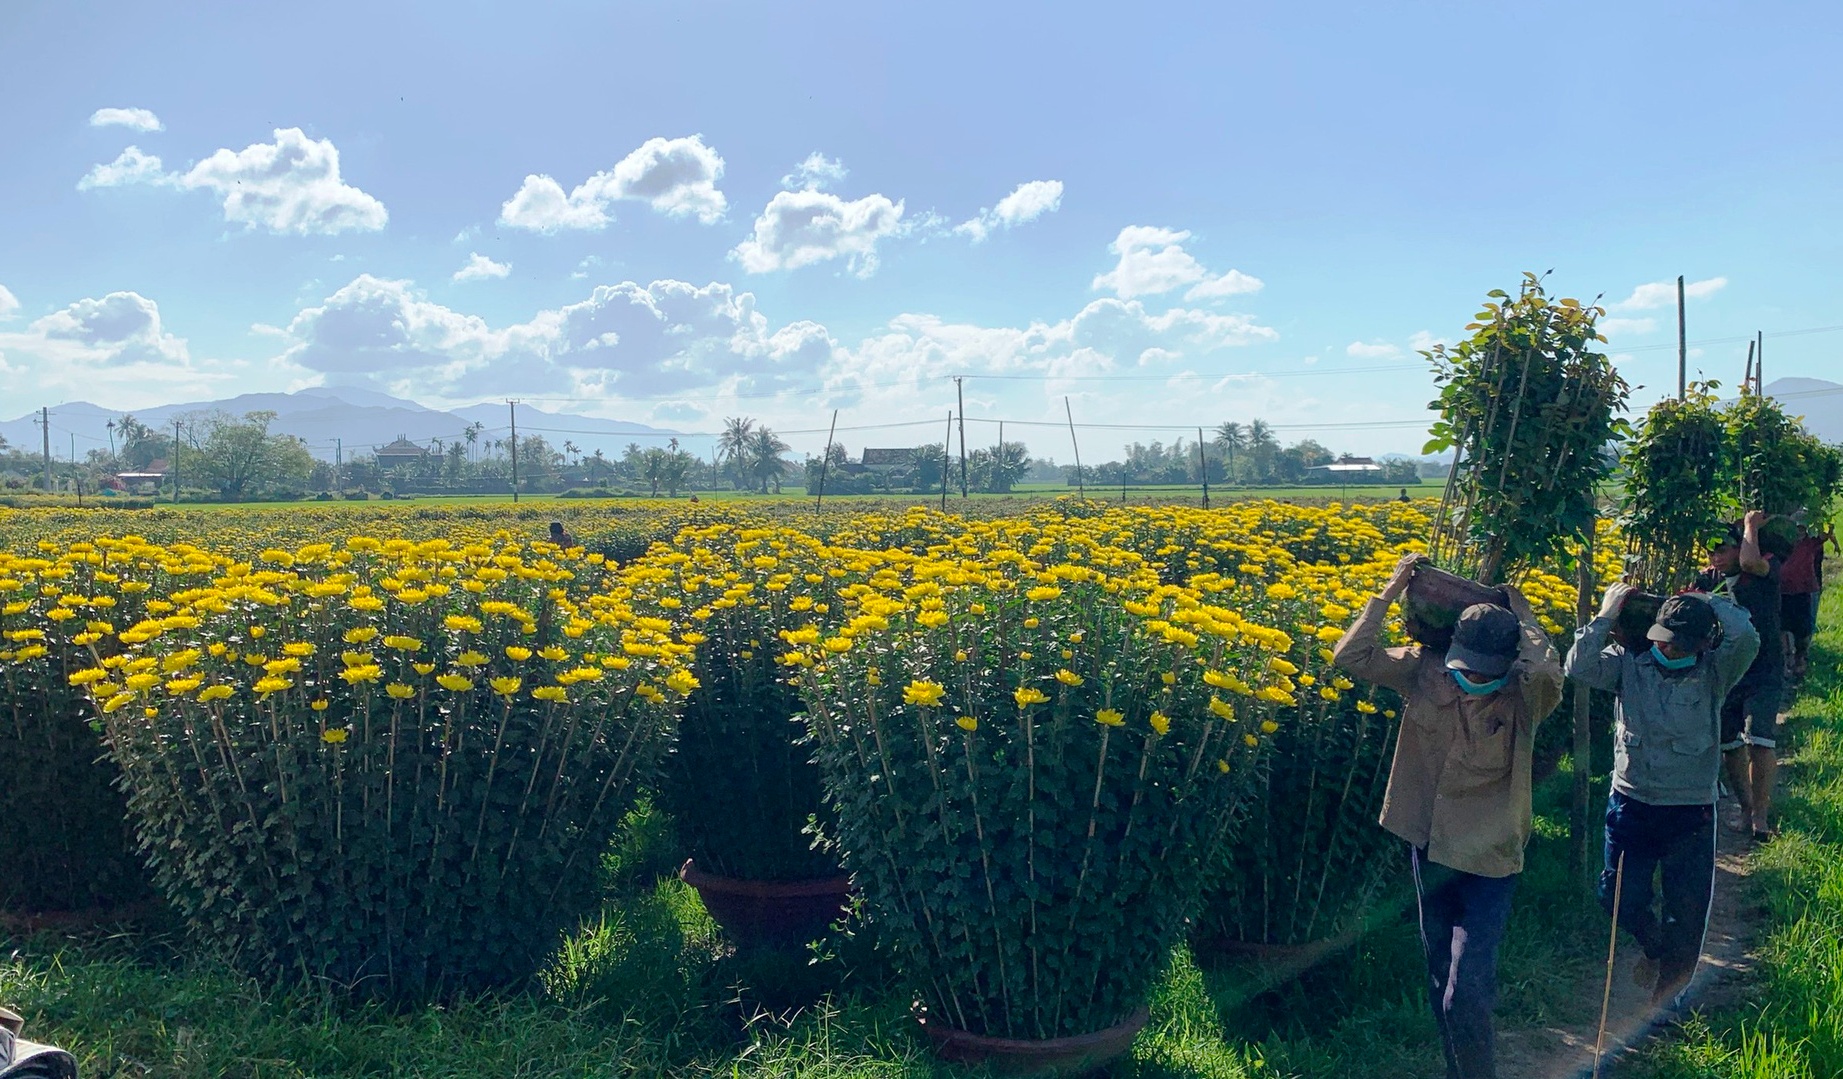 Khánh Hòa: Hoa cúc vàng đại đóa cao hơn 1m, được săn lùng ráo riết dịp Tết 